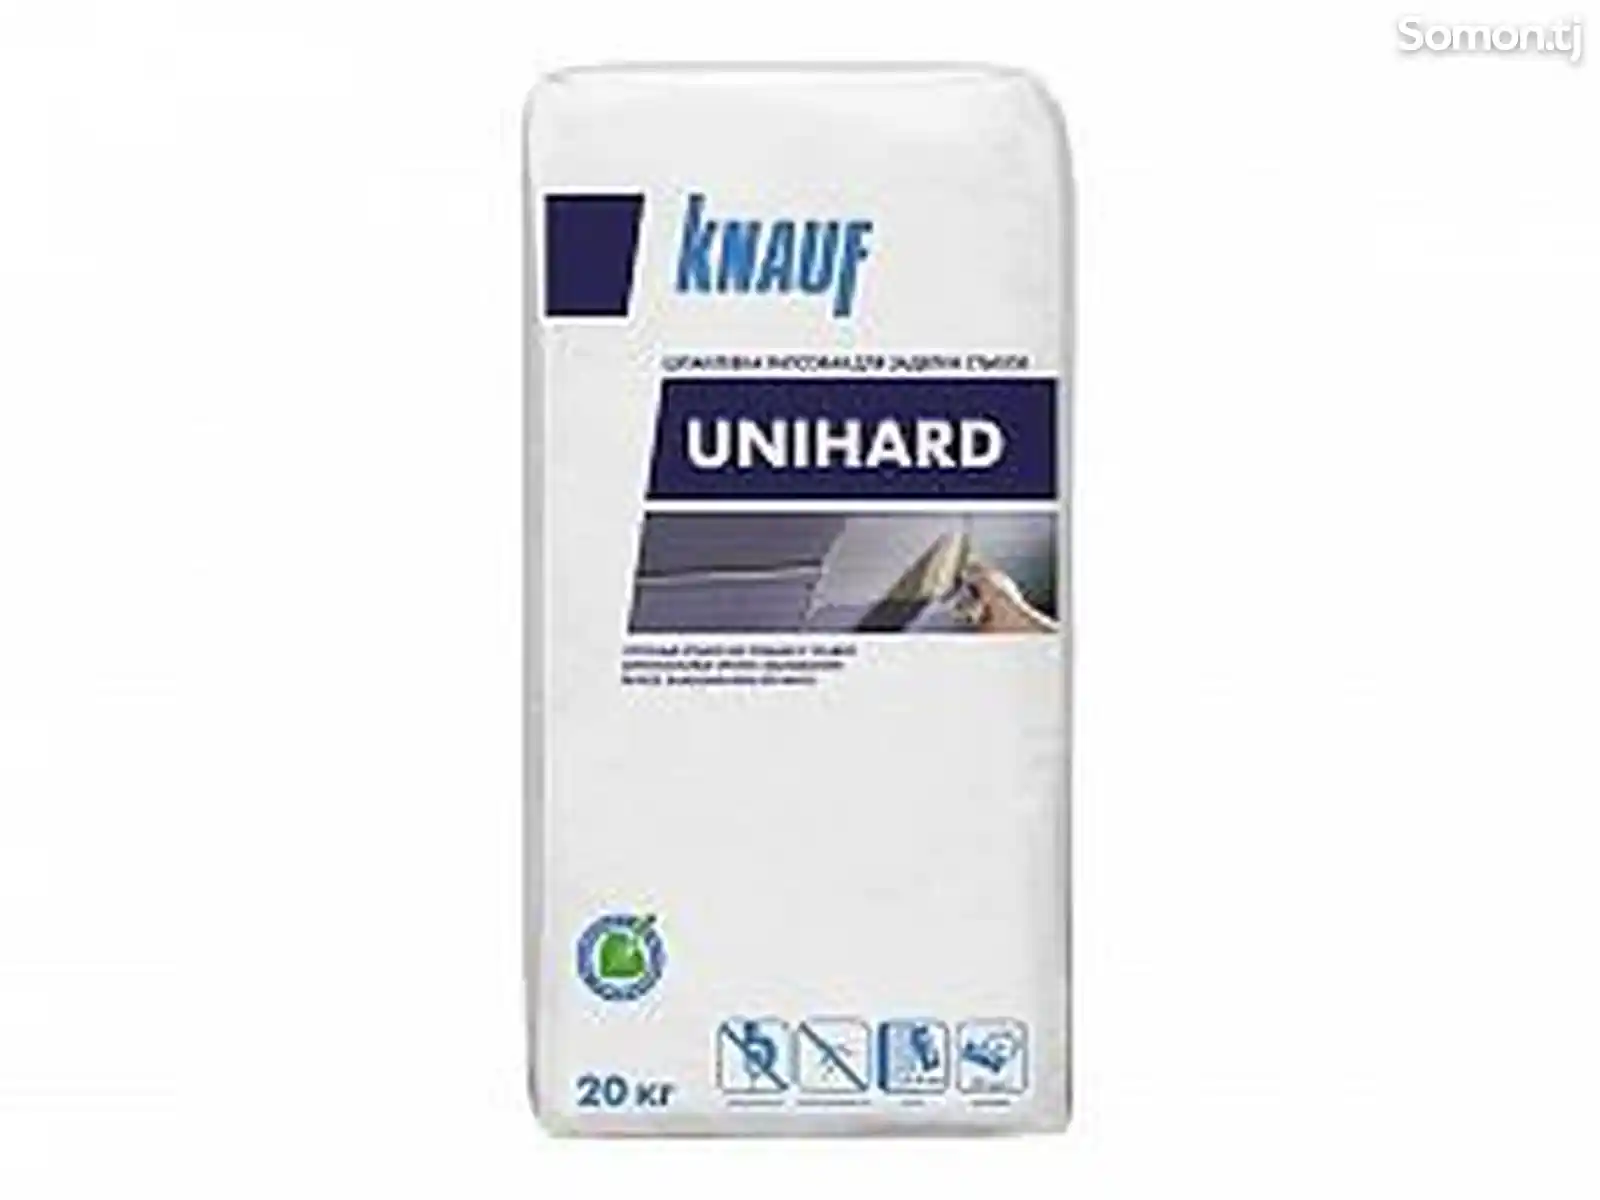 Сухая шпаклевочная смесь Knauf Unihard 20 kg